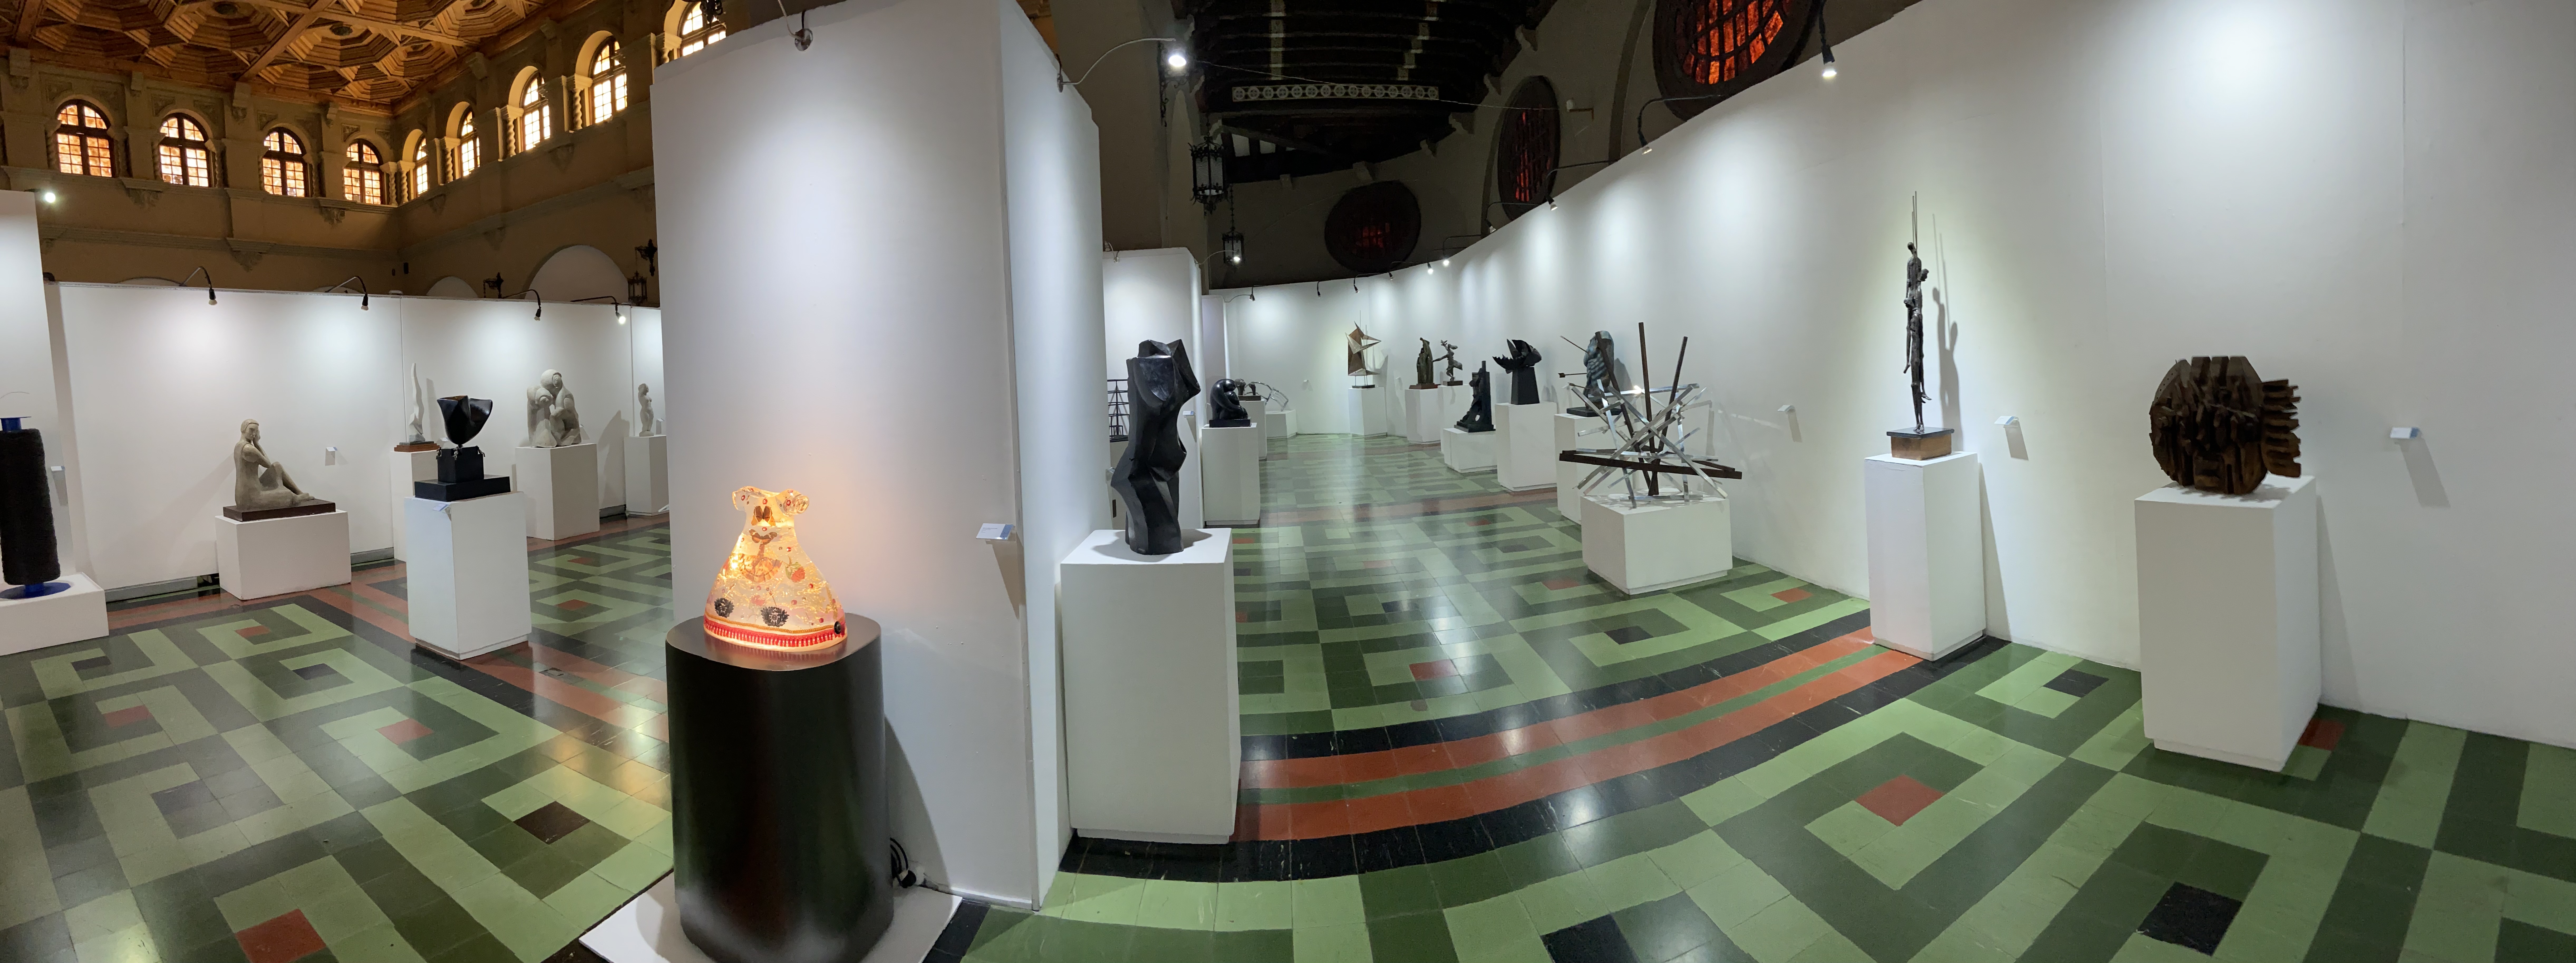 Obras de arte de escultura moderna y contemporánea se expondrán en el Museo Nacional de Arte Moderno Carlos Mérida